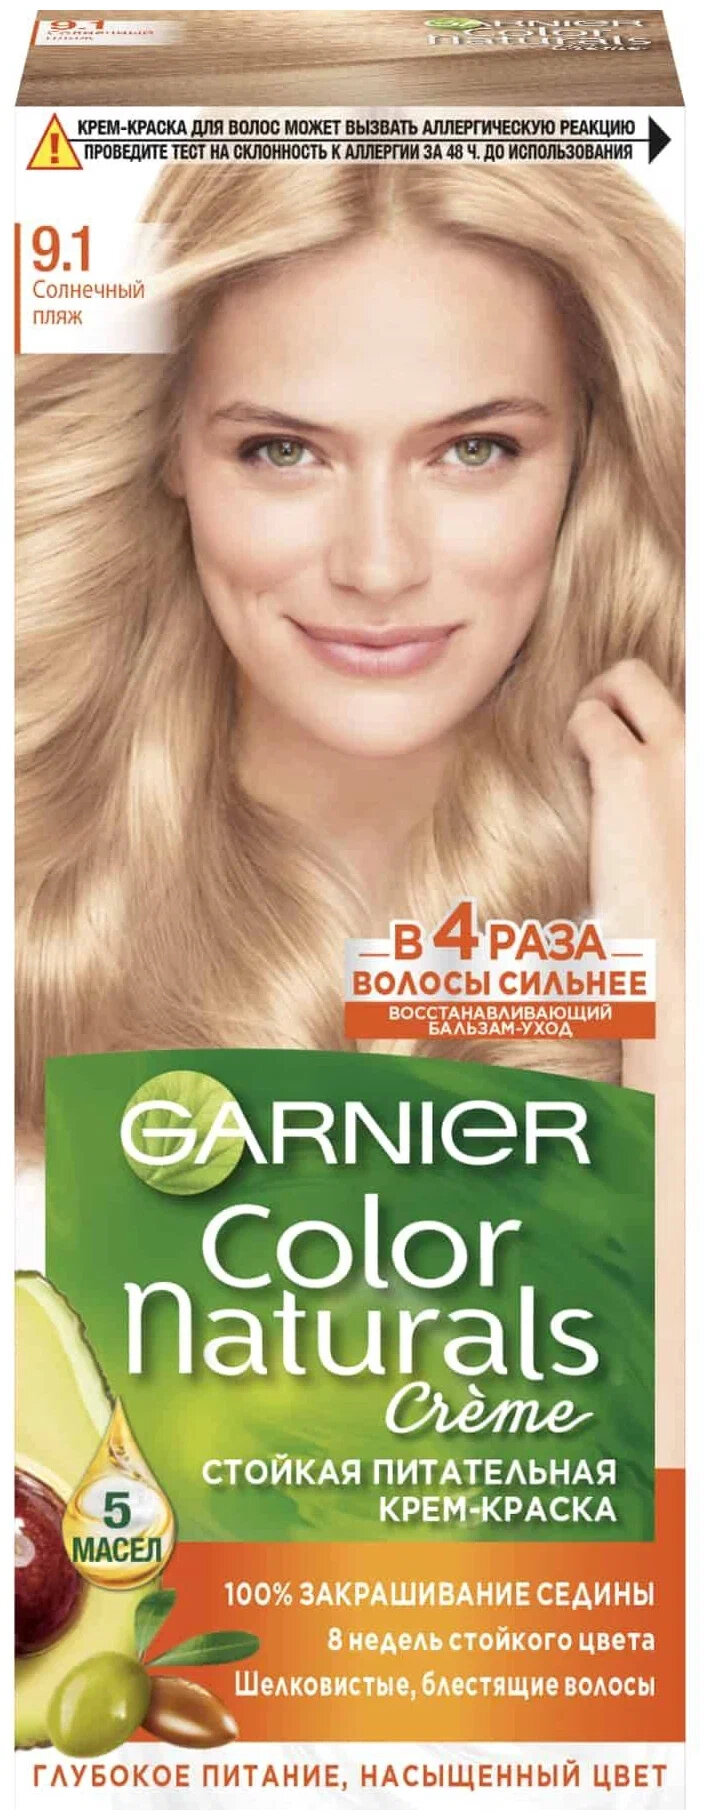 Стойкая питательная крем-краска для волос GARNIER Color Naturals, 9.1 солнечный пляж, 110 мл.